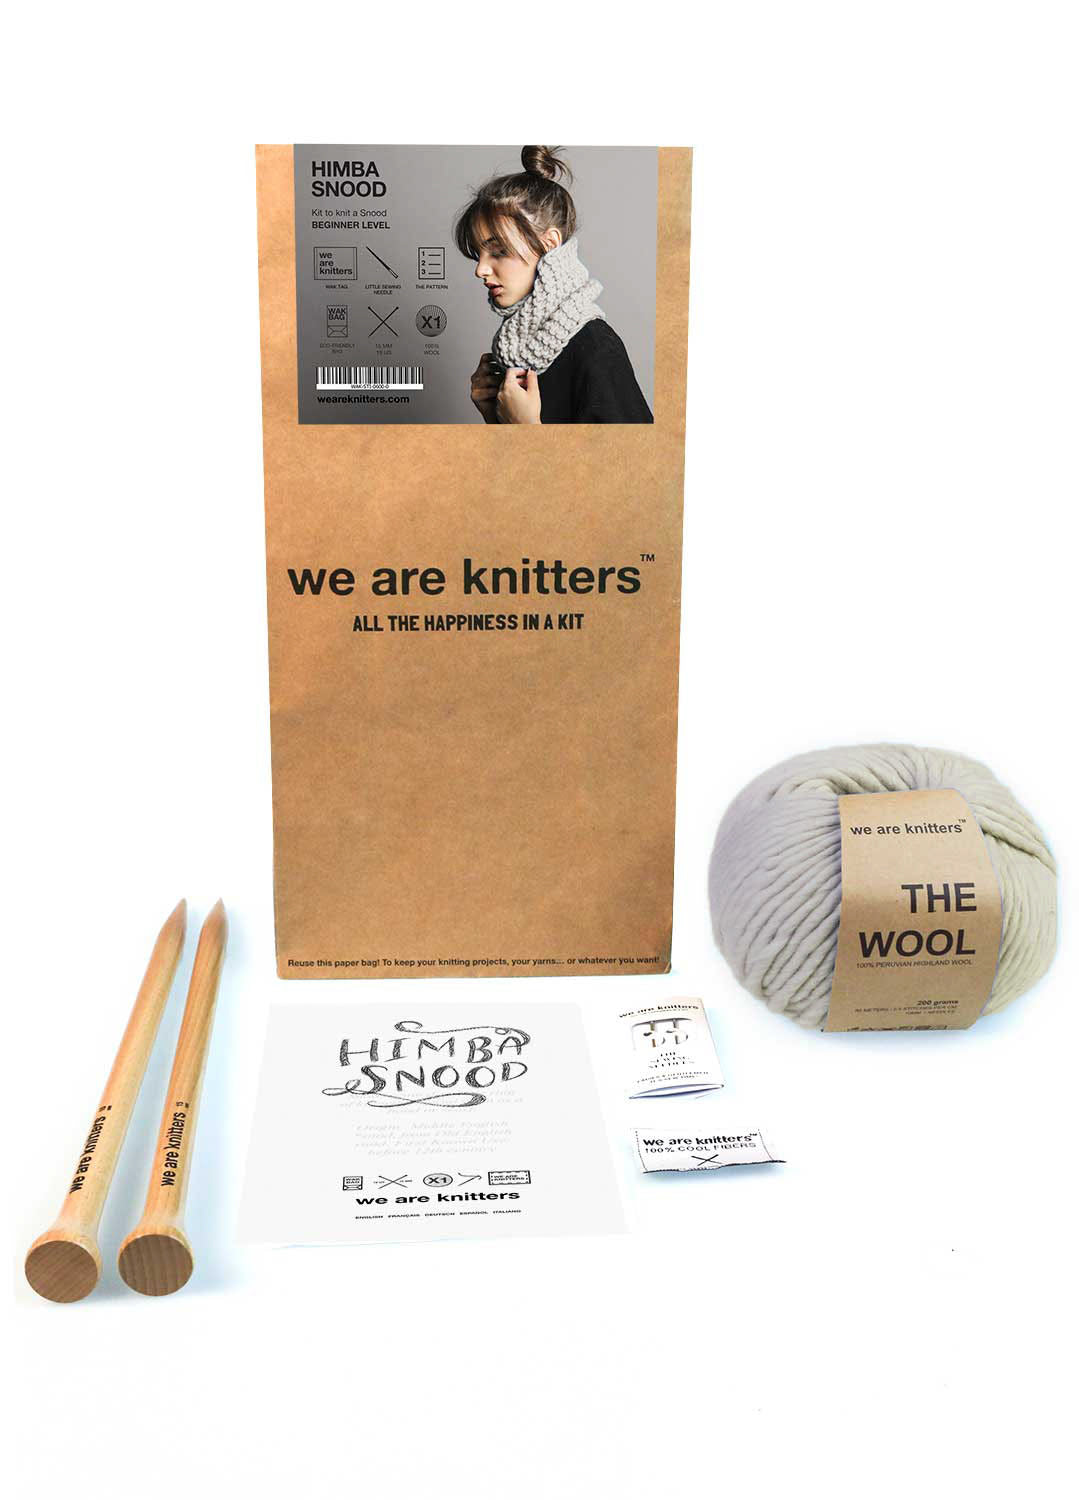 Beginner Knitting Kits